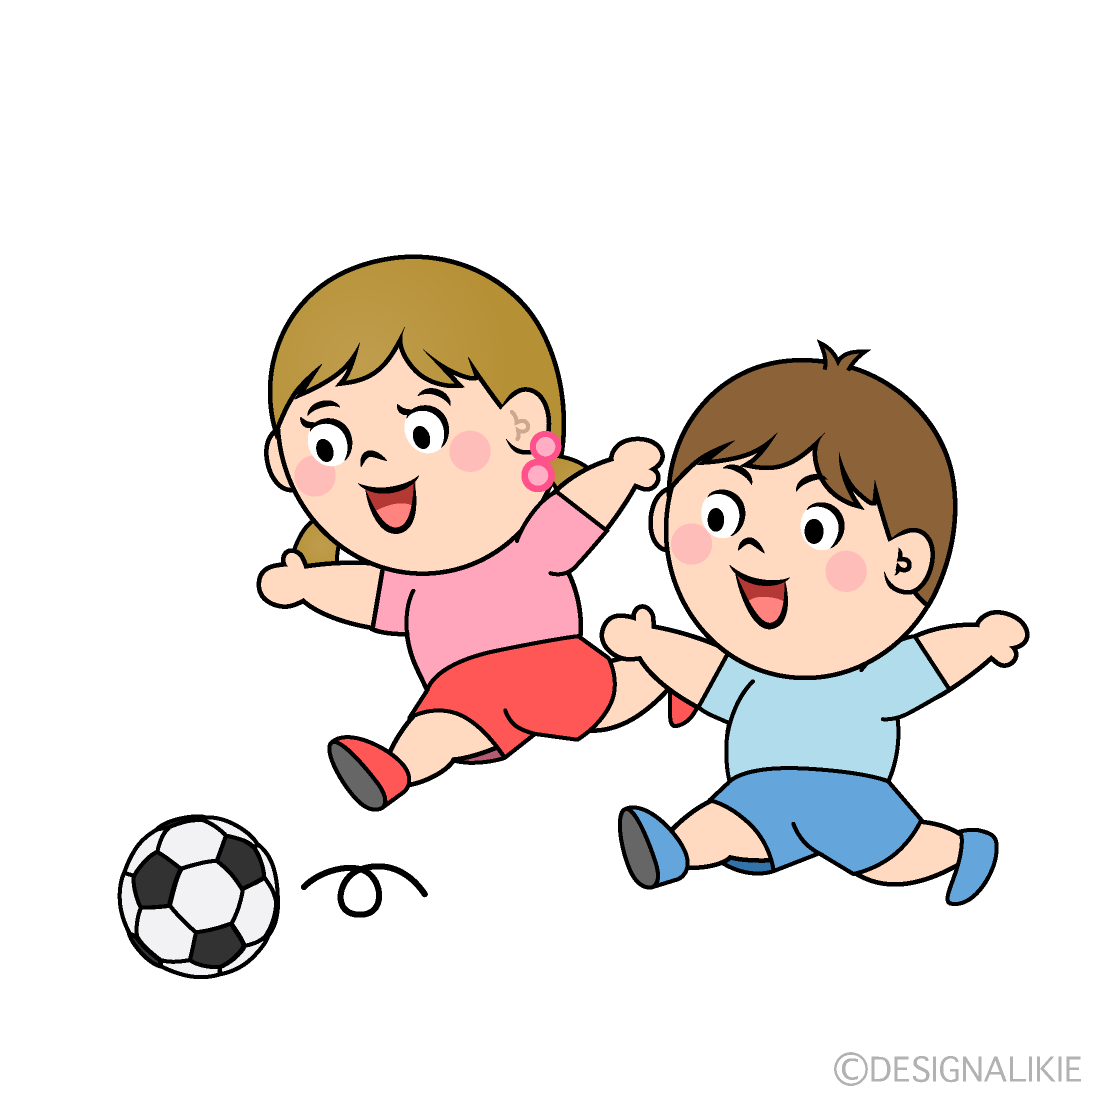 サッカーで走る子供イラストのフリー素材 イラストイメージ